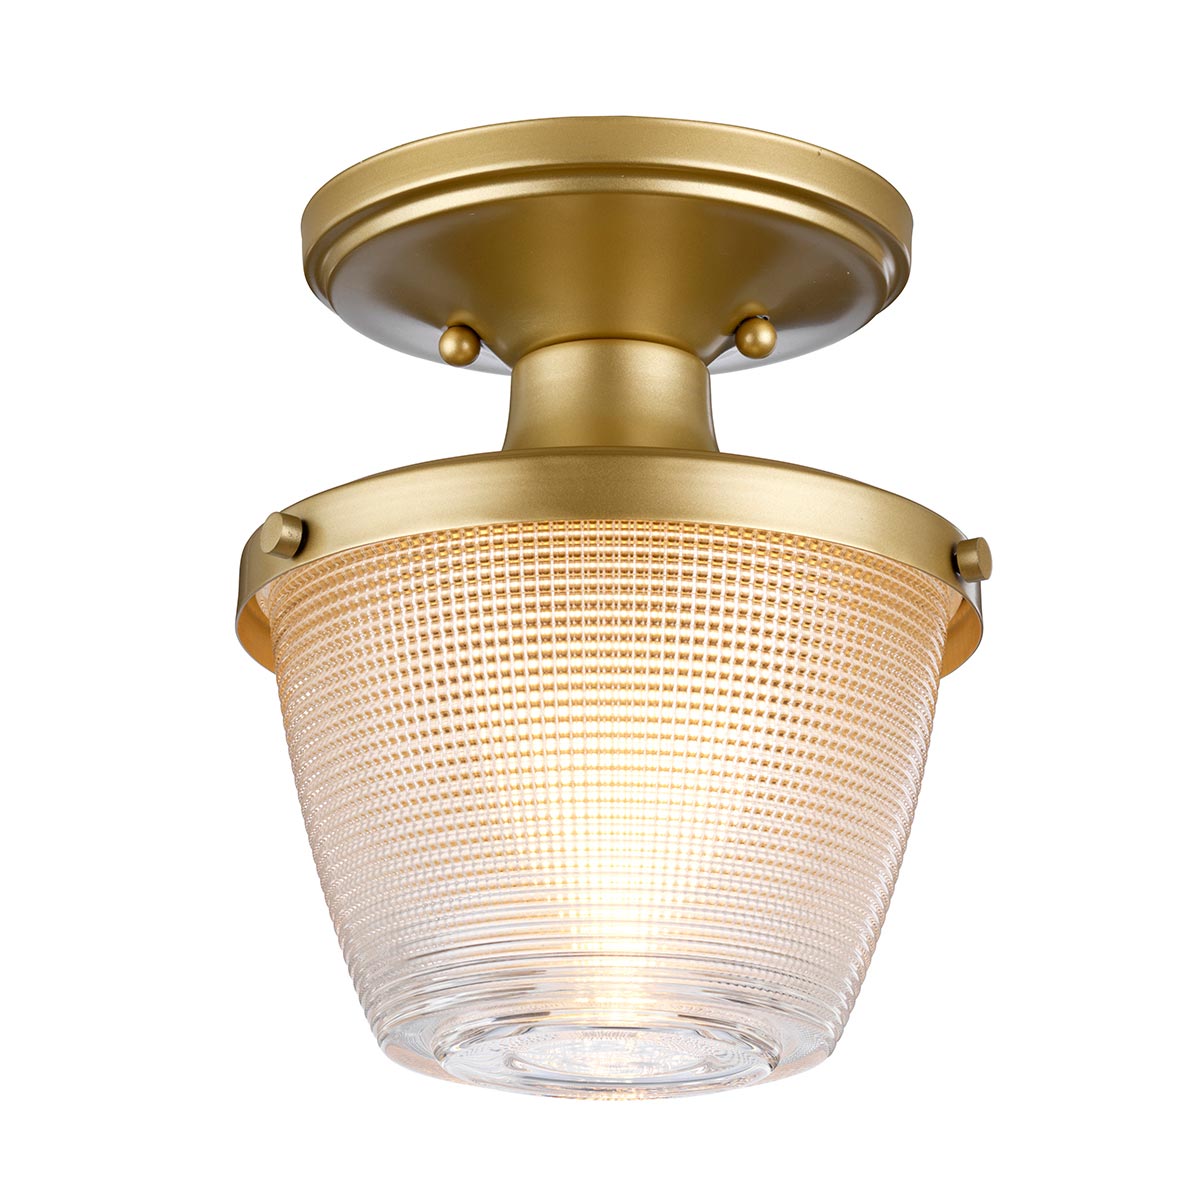 Quoizel Dublin 1 Lamp Semi Flush Bathroom Ceiling Light Painted Brass